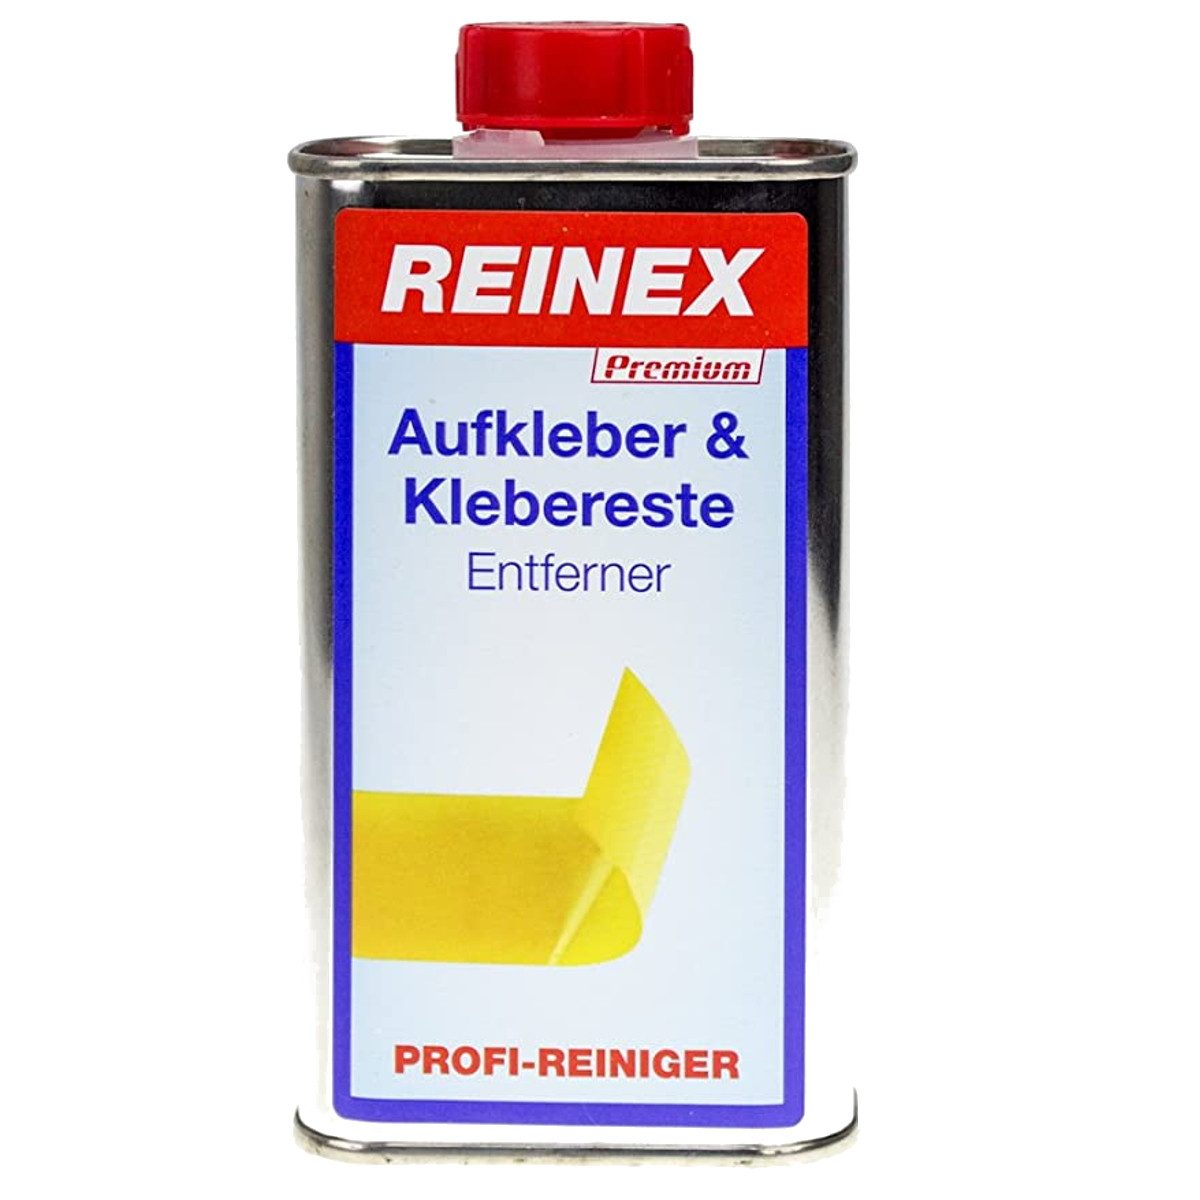 Reinex Aufkleber & Klebereste Entferner Aufkleberentferner Allzweckreiniger (1-St. 1x 250ml Dose 250 ml)